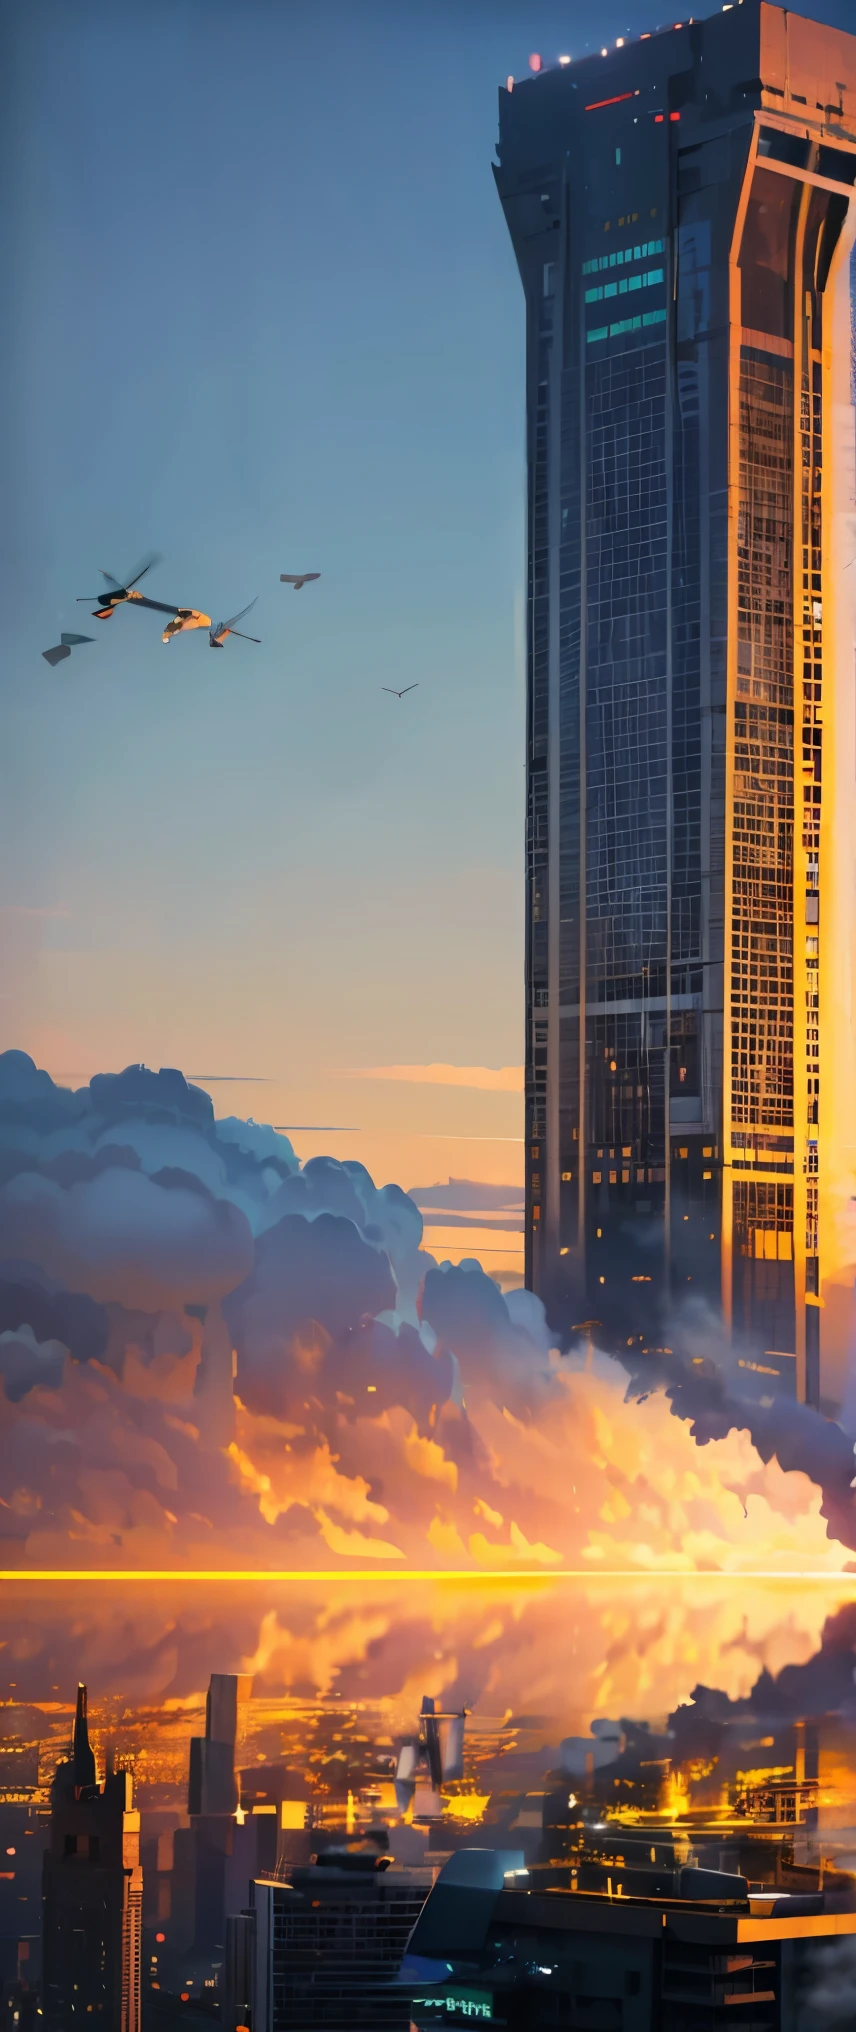 ((最高影像品質, 傑作, 最高影像品質, 8K)), ((风景摄影)), 紐約的一座摩天大樓, 巨大的塔壁上結出一個巨大的繭, 一個巨大的馬蜂窩, 攻擊直升機將其包圍, 